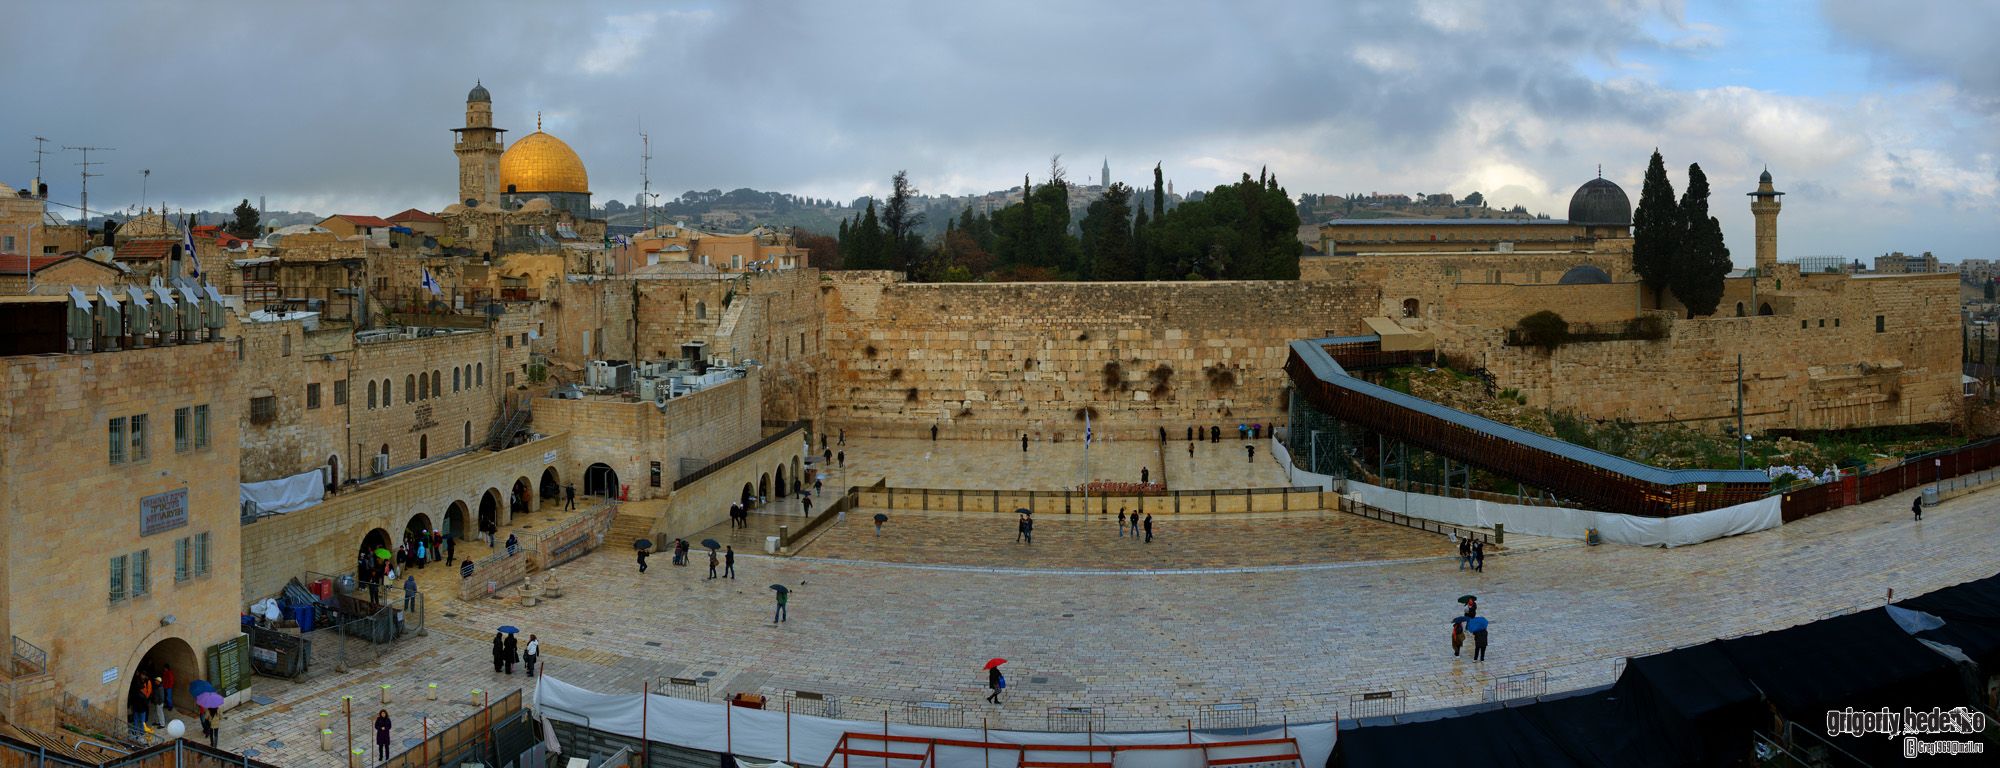 В феврале в Иерусалиме каждый день идут дожди...